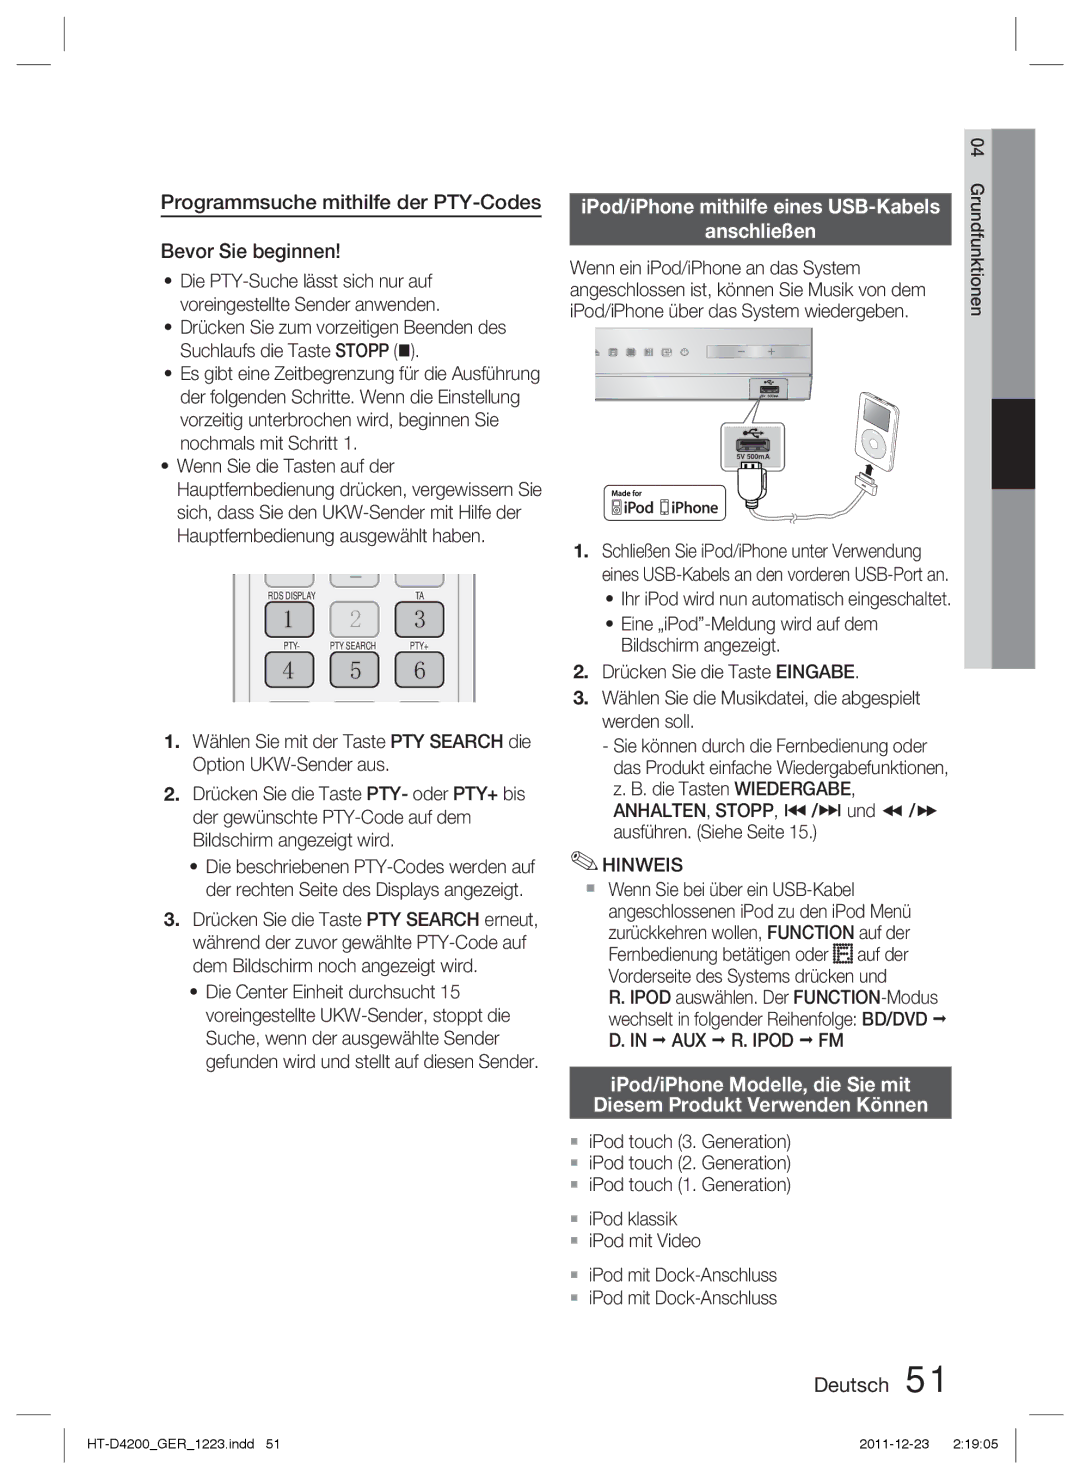 Samsung HT-D4200/EN manual Programmsuche mithilfe der PTY-Codes Bevor Sie beginnen, IPod/iPhone mithilfe eines USB-Kabels 